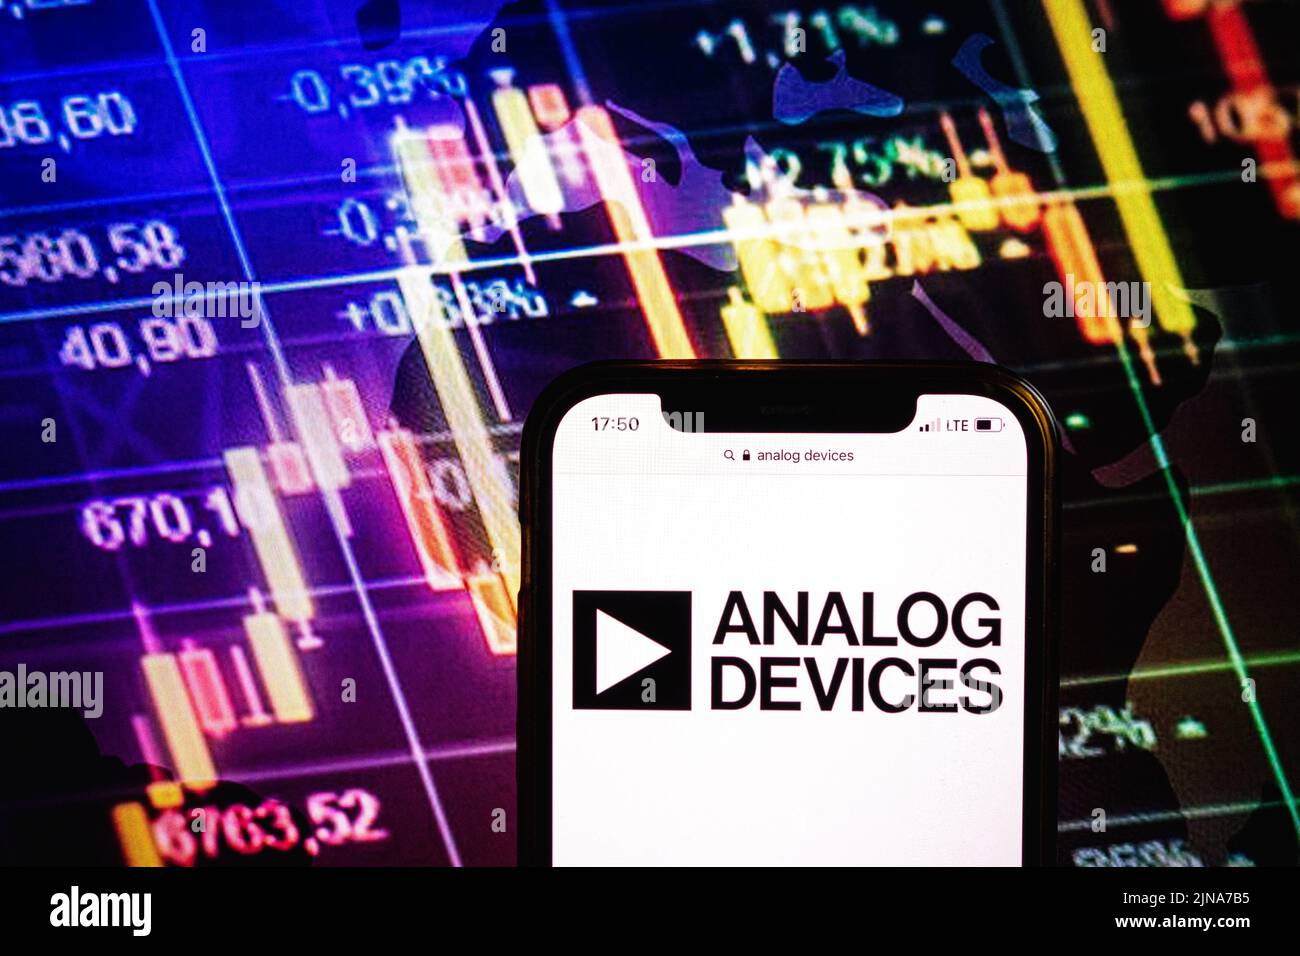 KONSKIE, POLONIA - 09 agosto 2022: Smartphone che mostra il logo della società Analog Devices sullo sfondo del diagramma di borsa Foto Stock